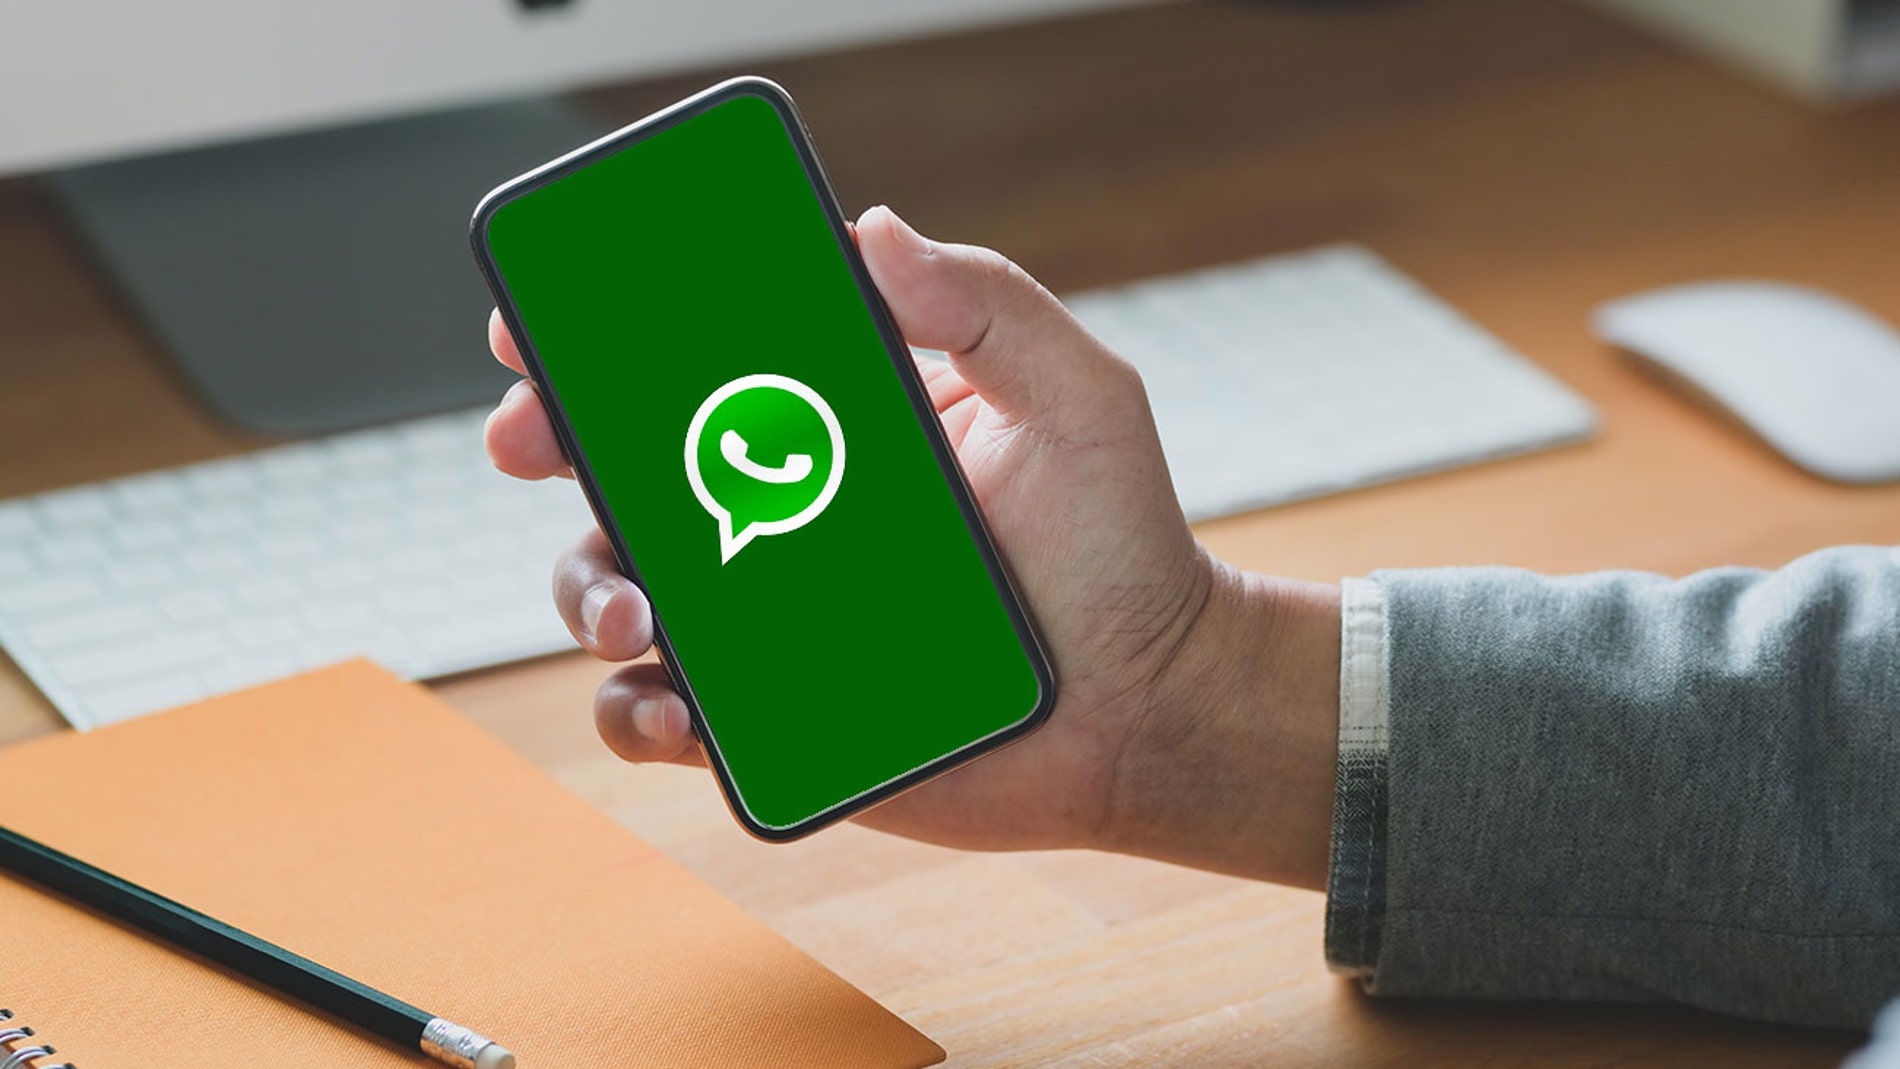 Estos son los móviles que no podrán usar WhatsApp a partir de 2021